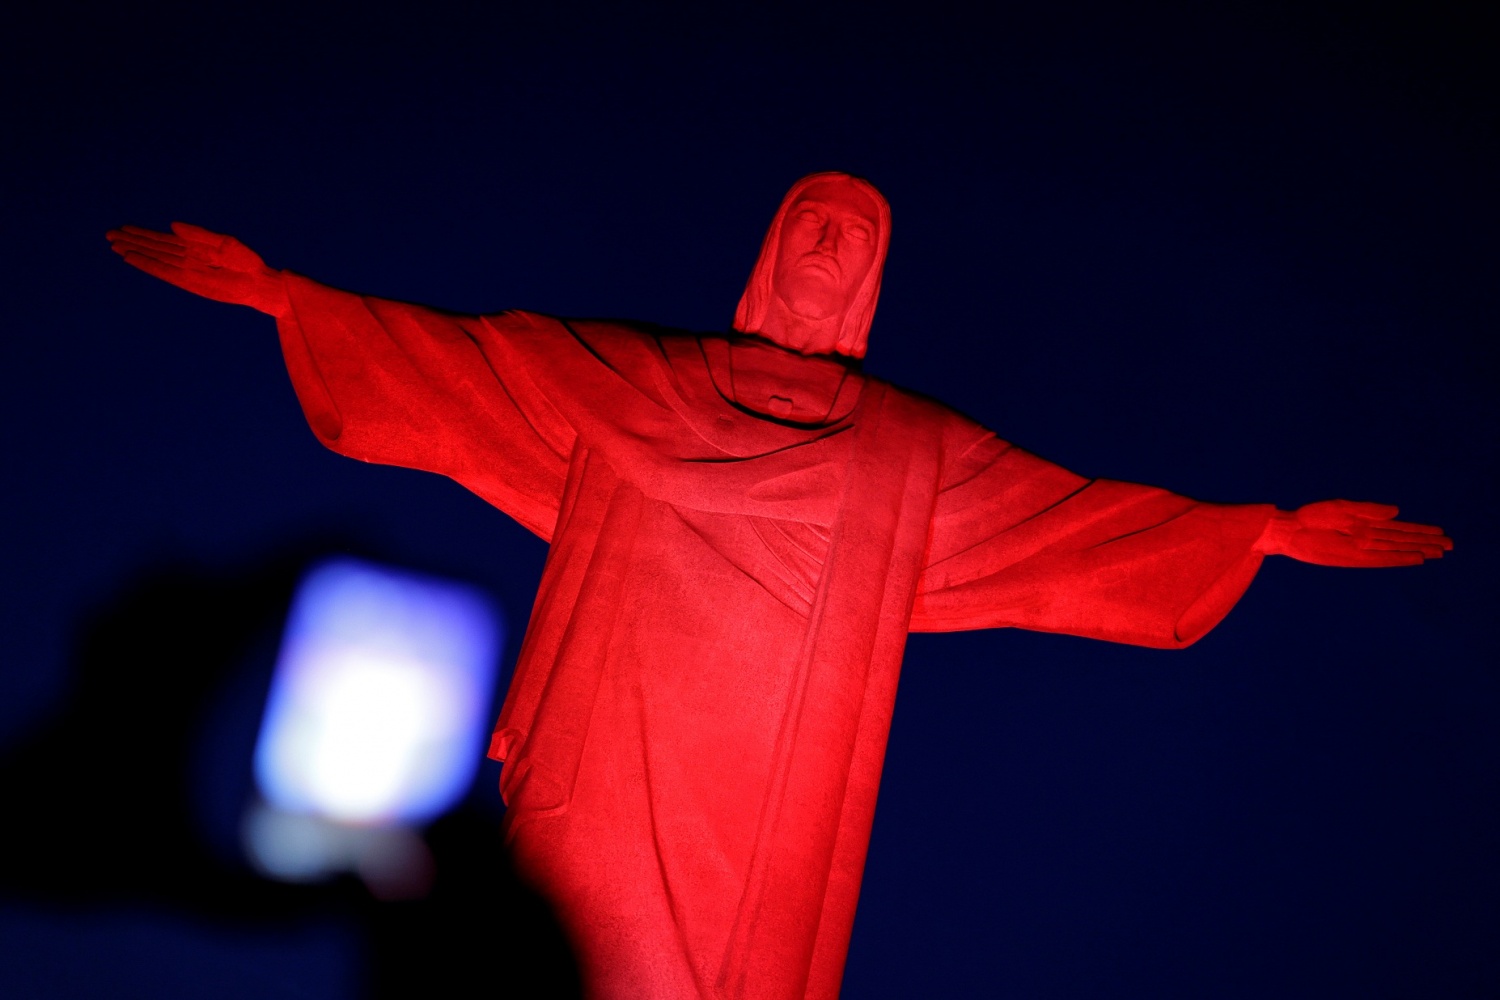 Jesus Christ statue in Brazil